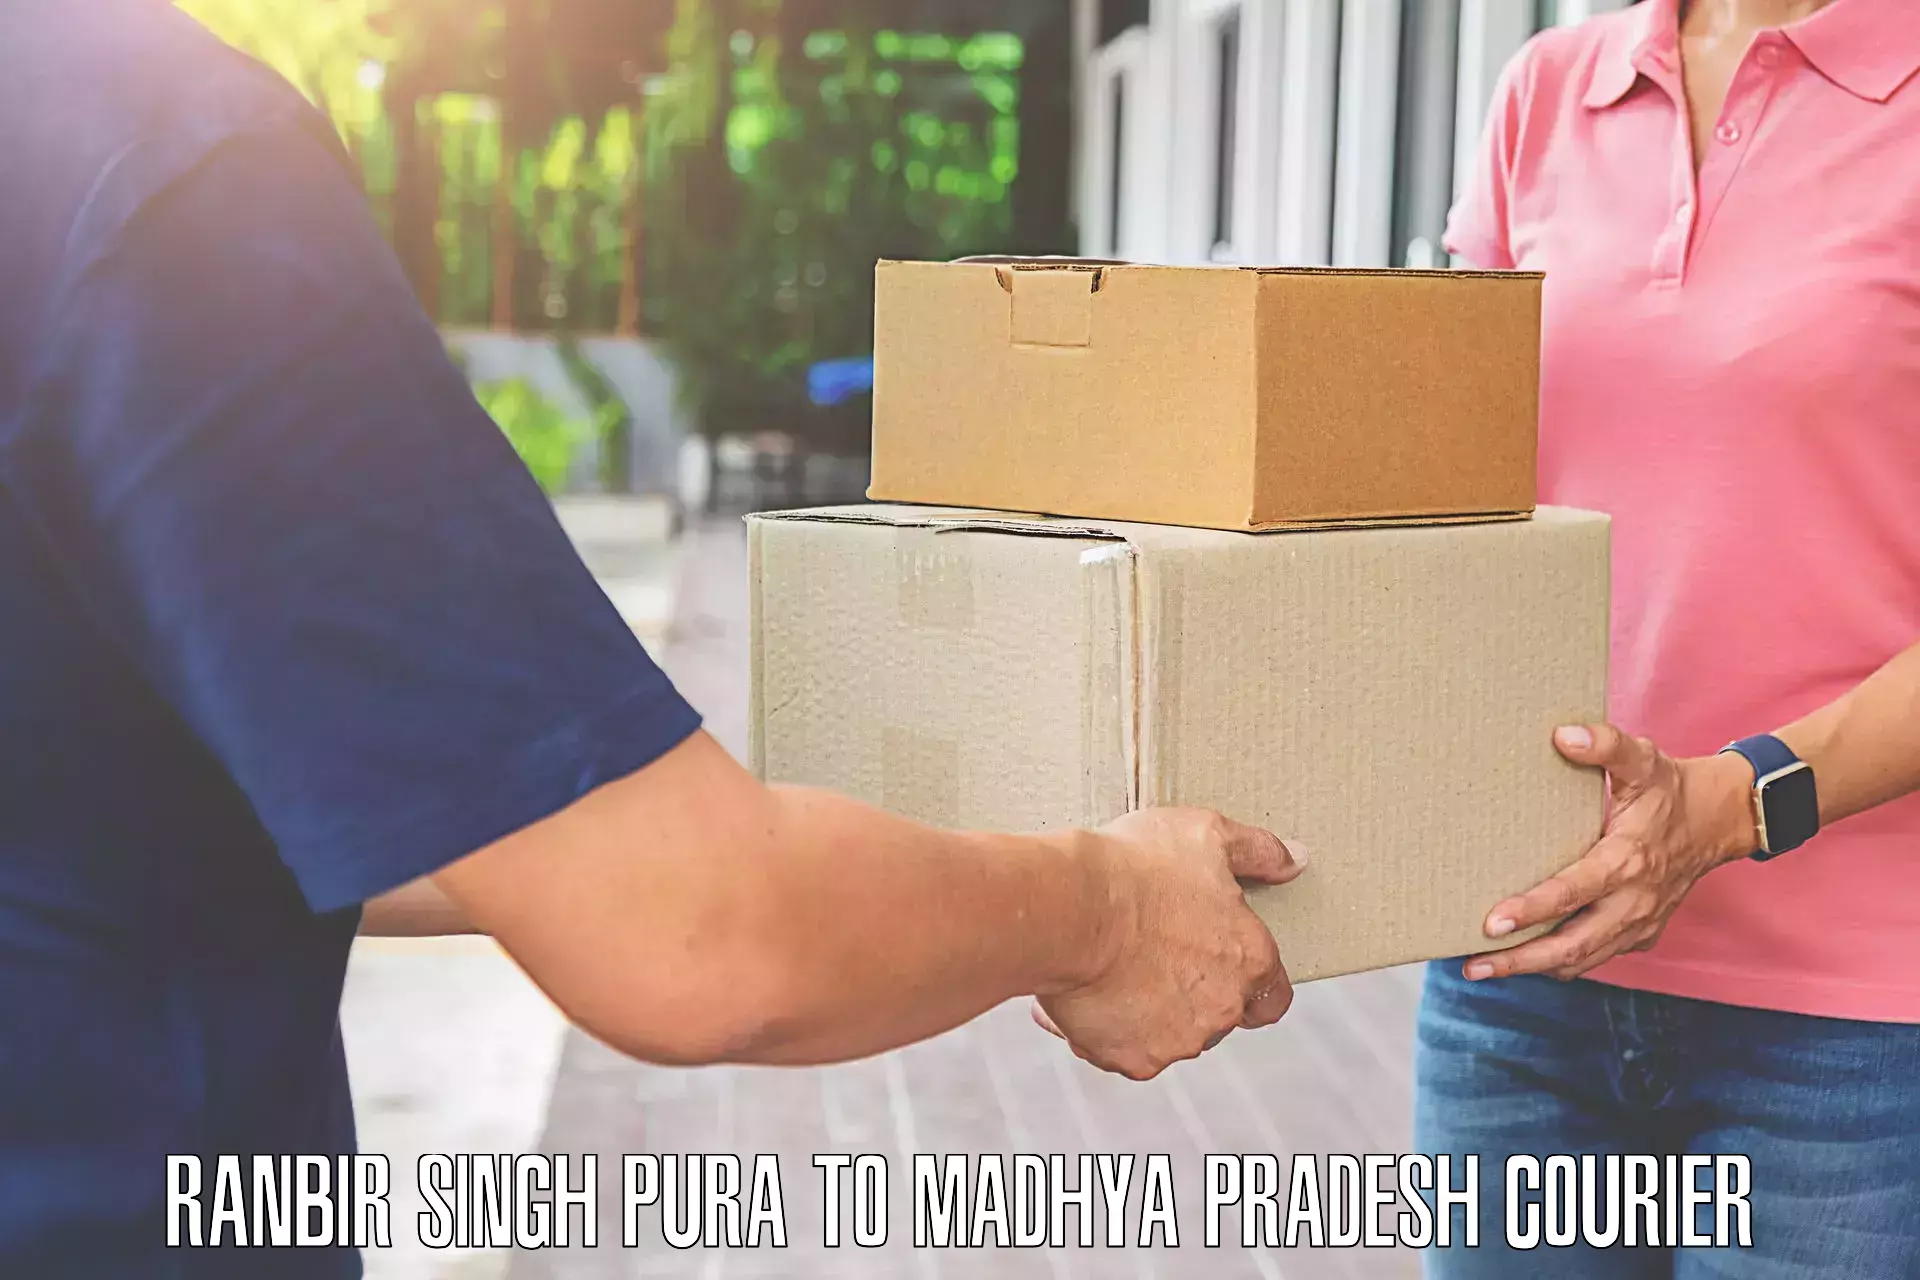 Luggage shipment tracking Ranbir Singh Pura to Ranchha